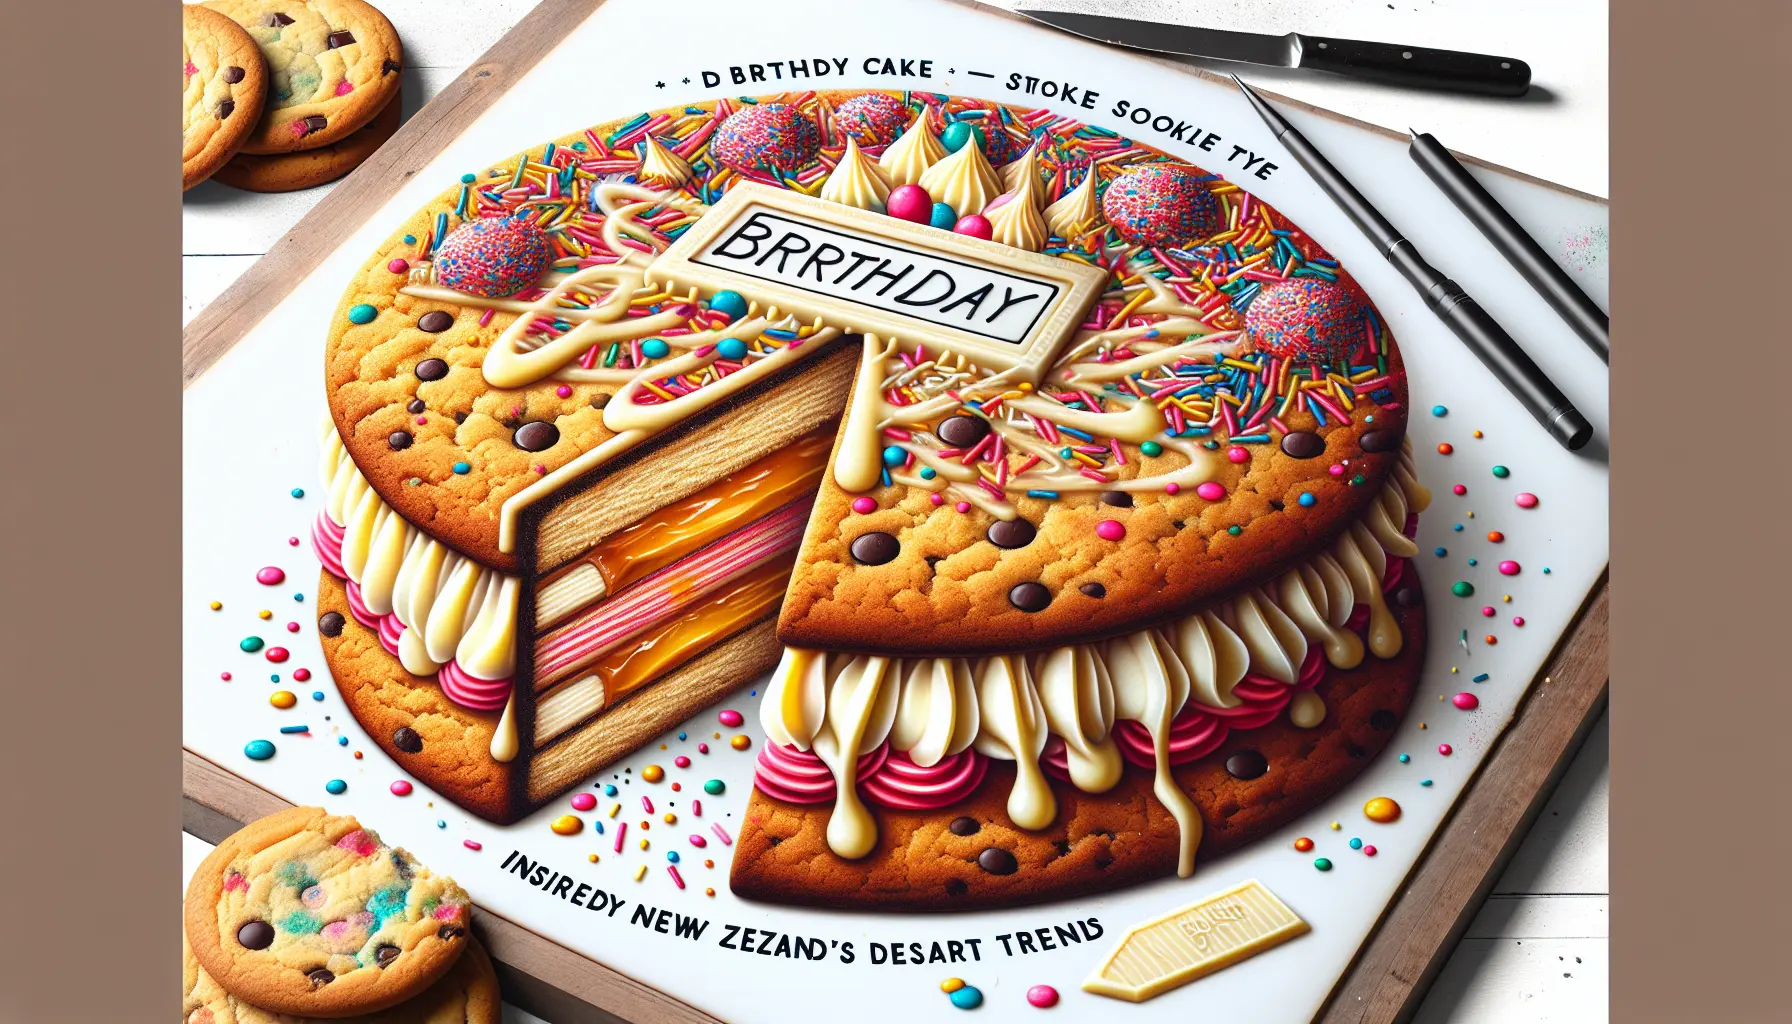 Indulge in NZ’s Personalised Birthday Cake Stuffed Cookies